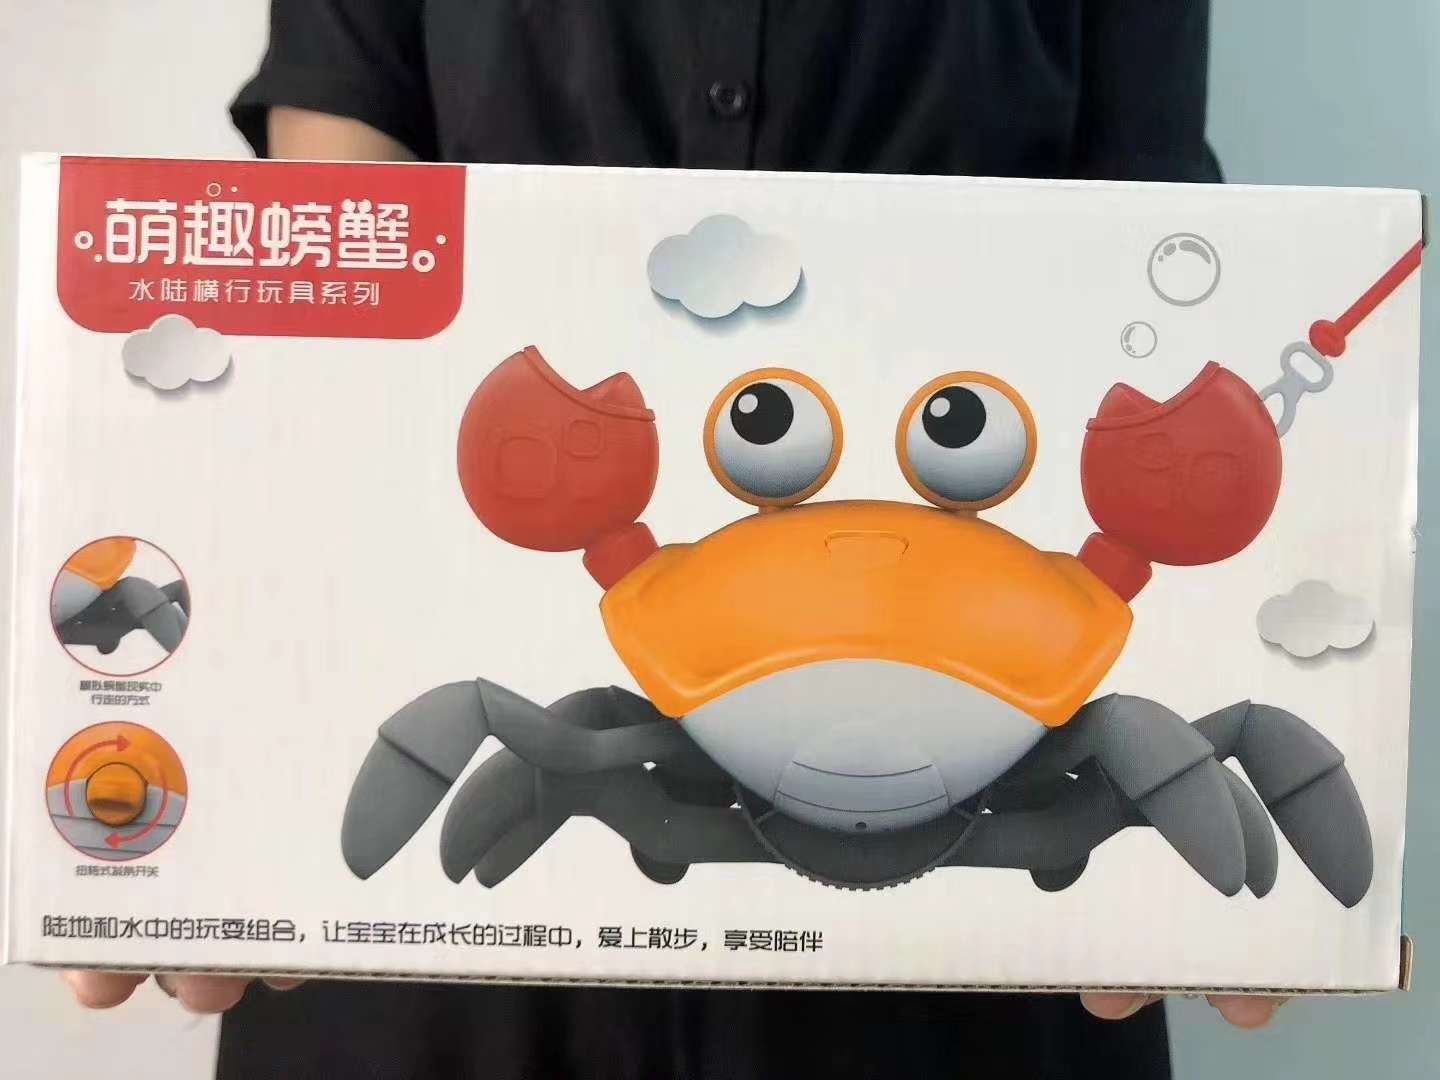 水陆两栖横行霸道大眼睛螃蟹盒子拉线玩具一箱60个产品图